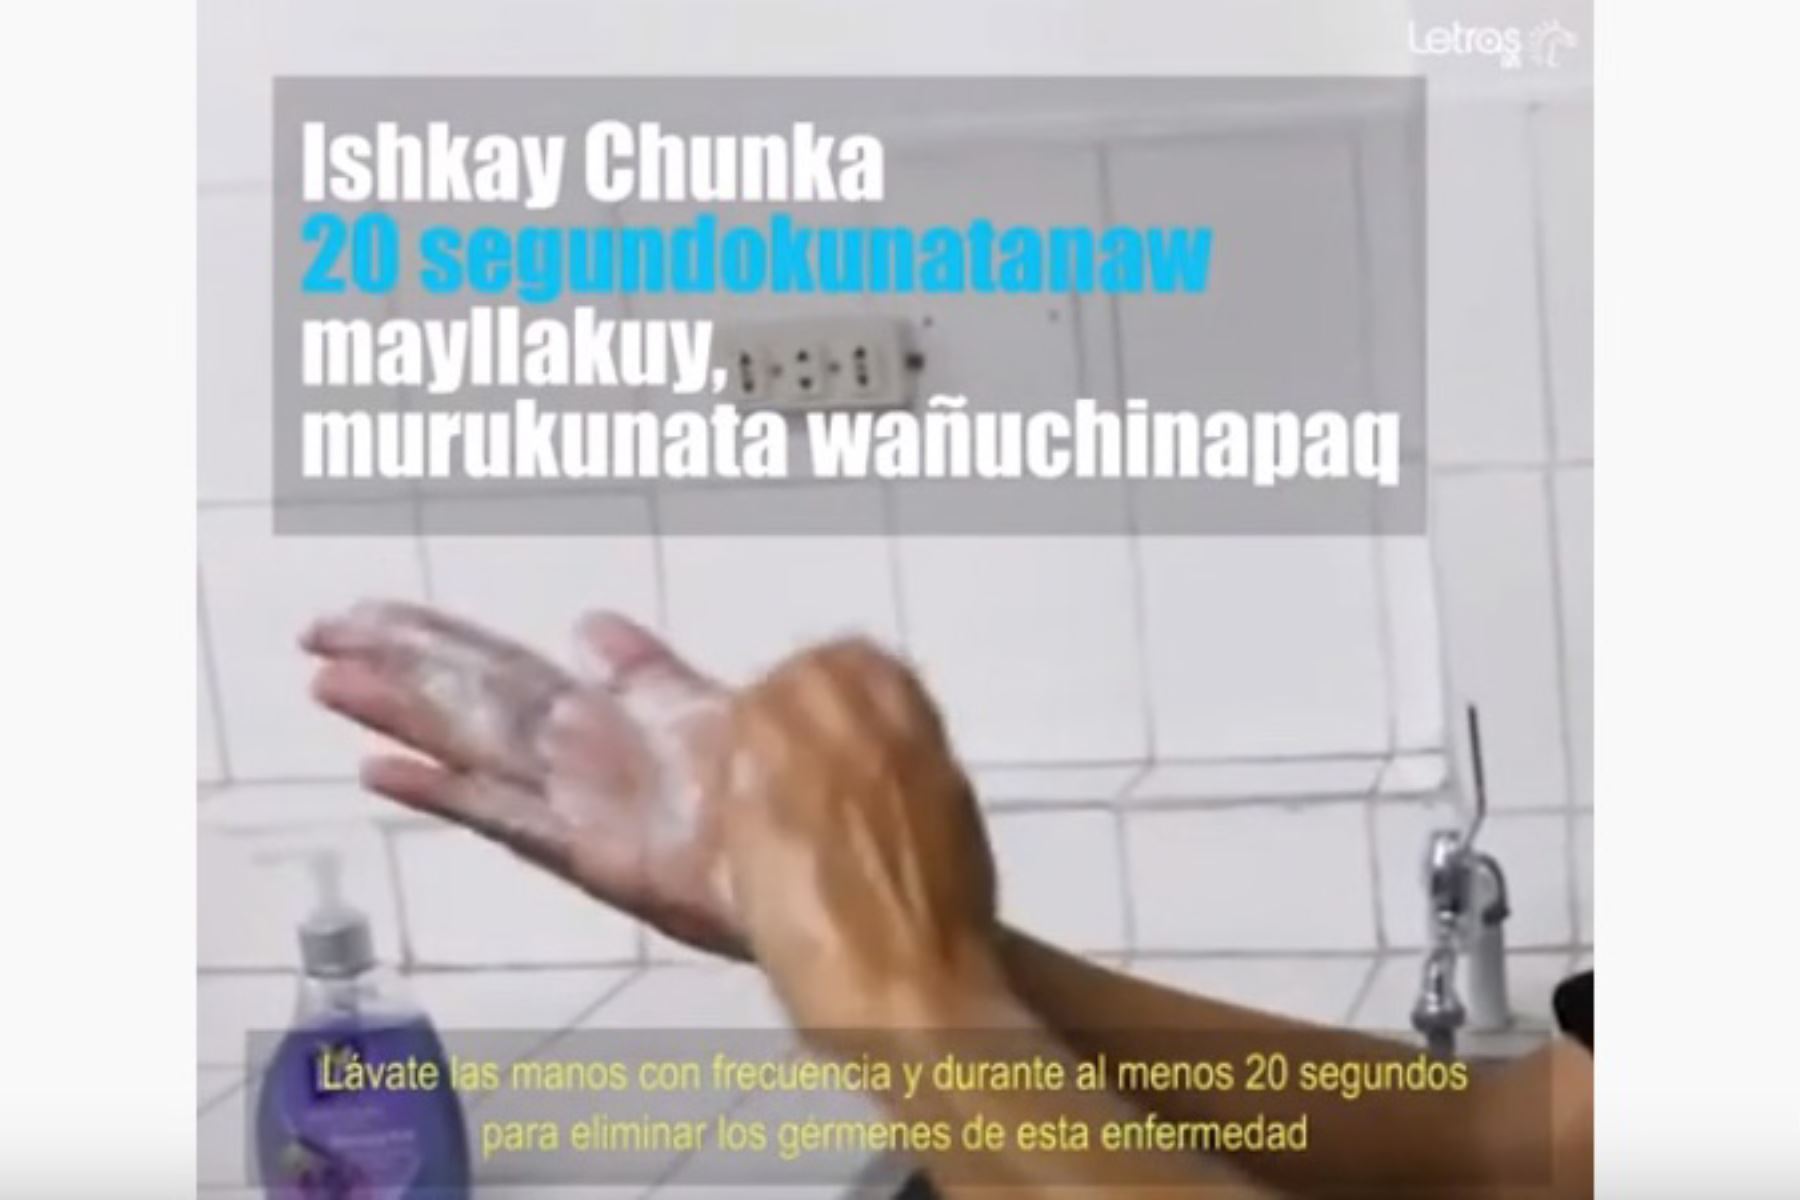 Video en idioma quechua con información sobre el coronavirus y la manera de prevenir esta enfermedad